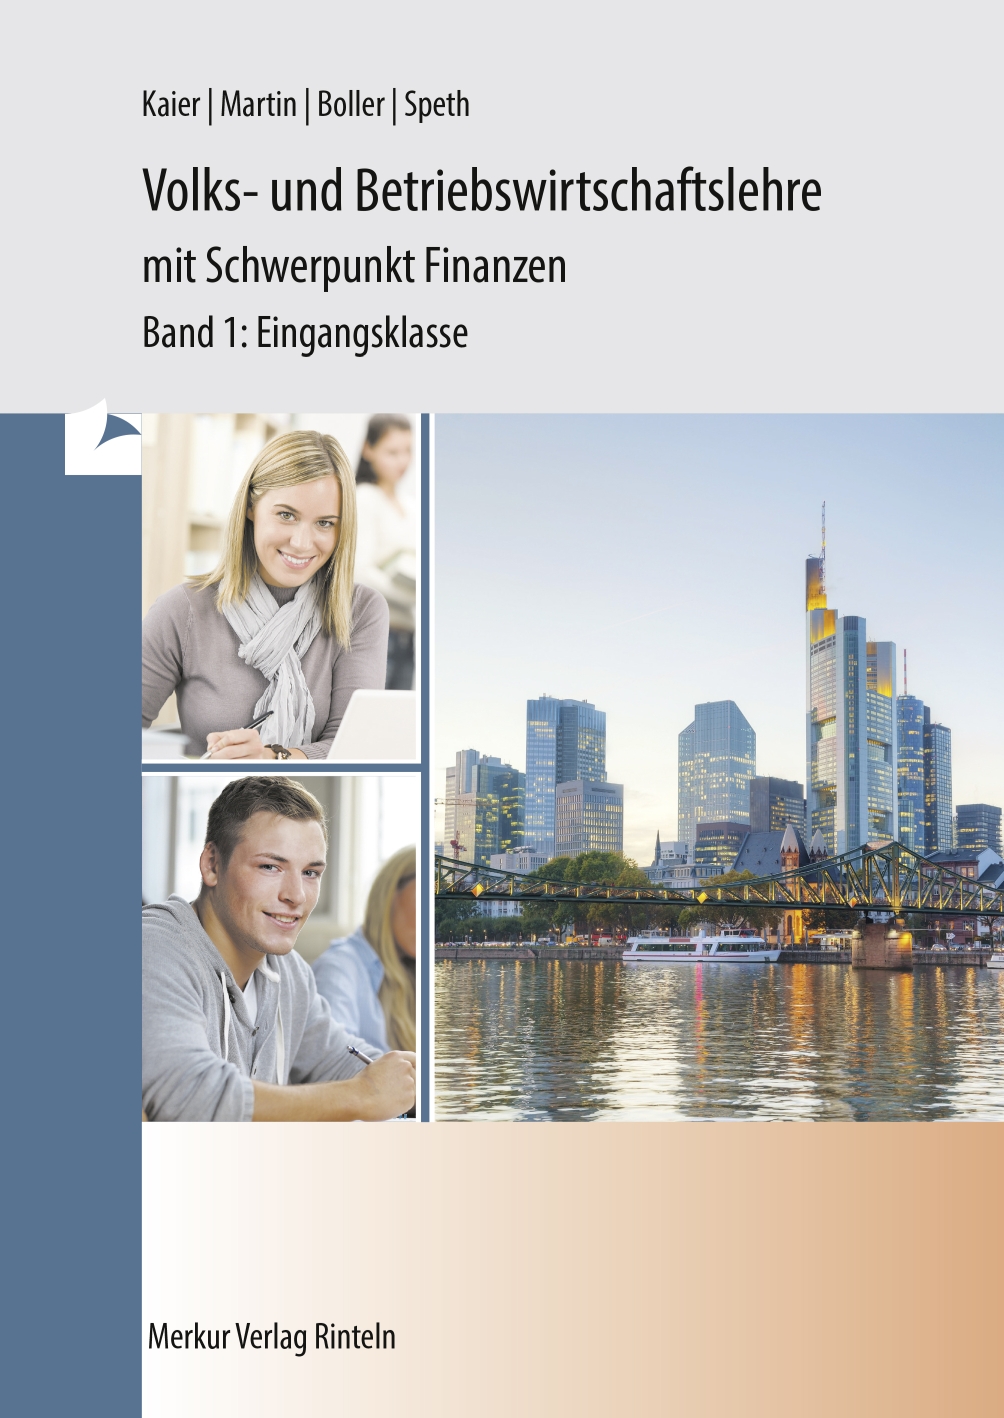 Volks- und Betriebswirtschaftslehre mit Schwerpunkt Finanzen Band 1 - Eingangsklasse